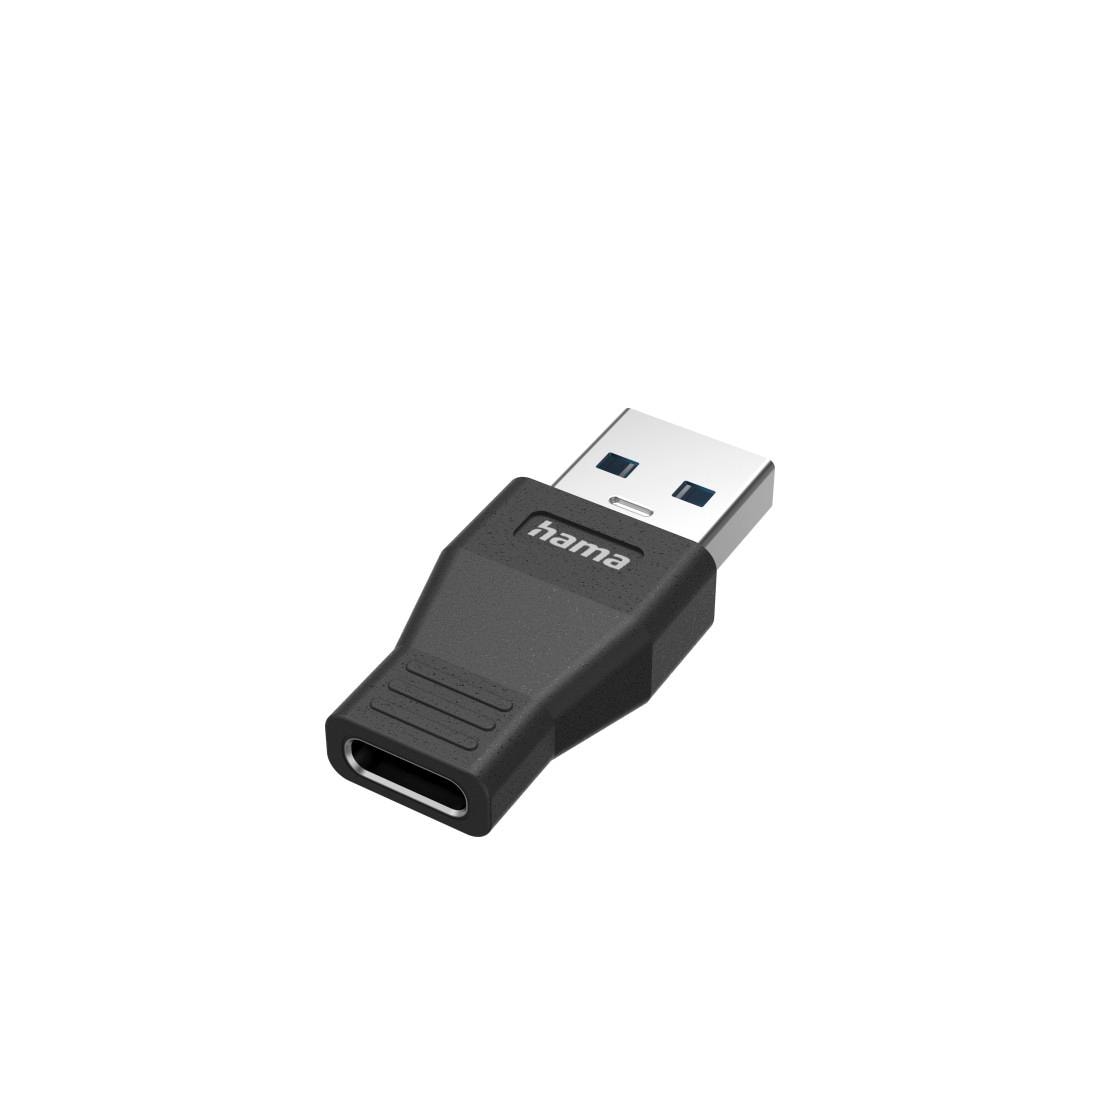 Hama USB-Adapter »USB-A-Stecker - USB-C-Buchse 3.2 5 Gbit/s USB A-Adapter auf USB-C«, USB Typ A zu USB-C